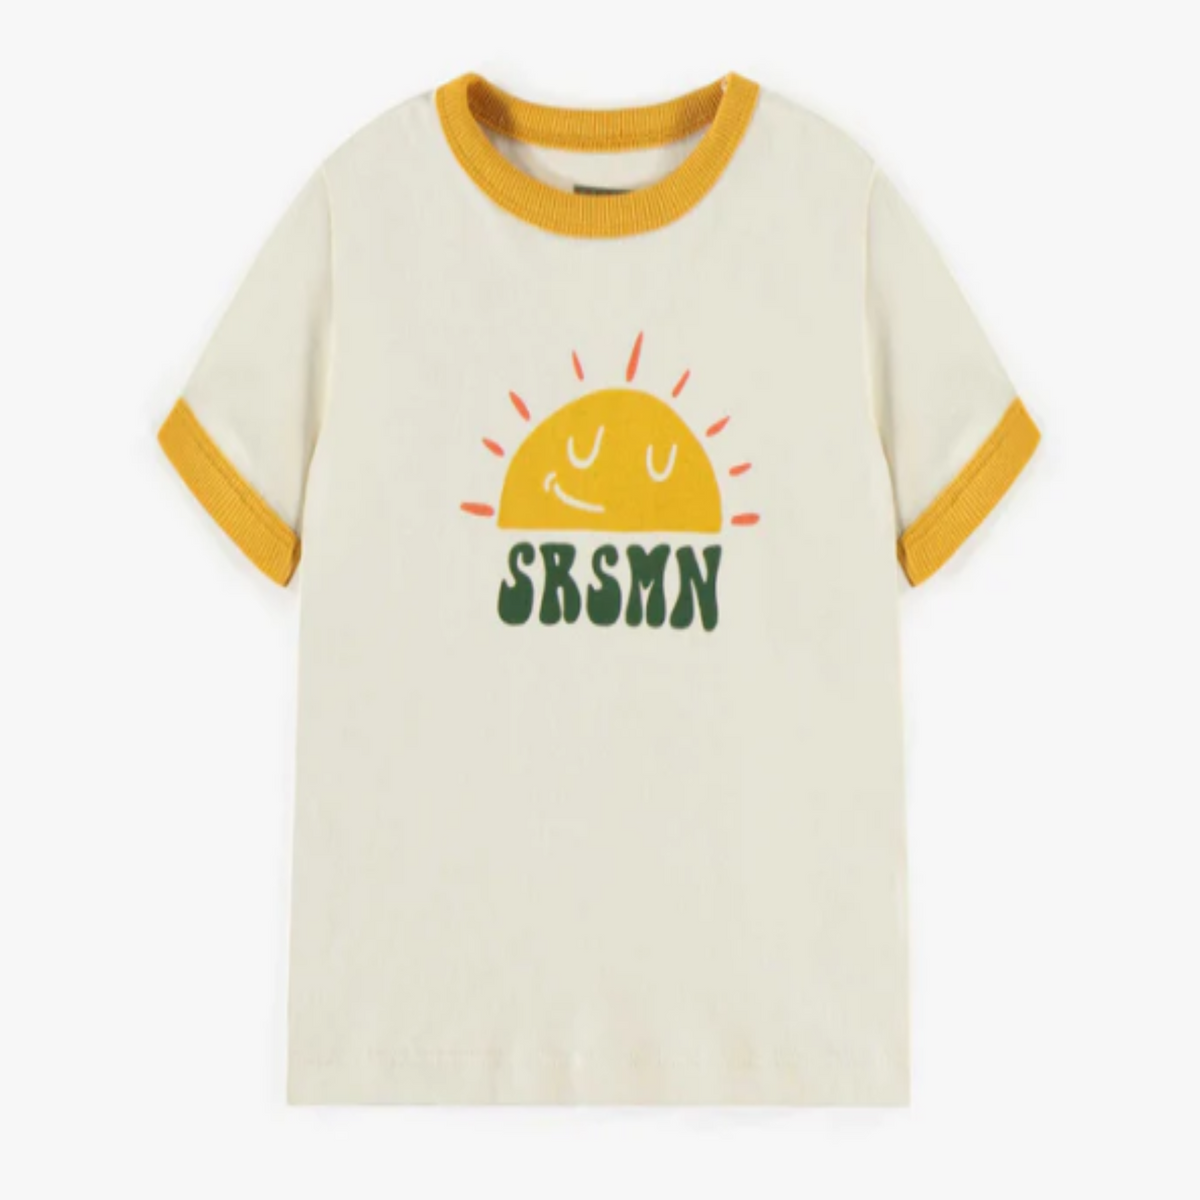 Cream Sunset T-Shirt, Baby